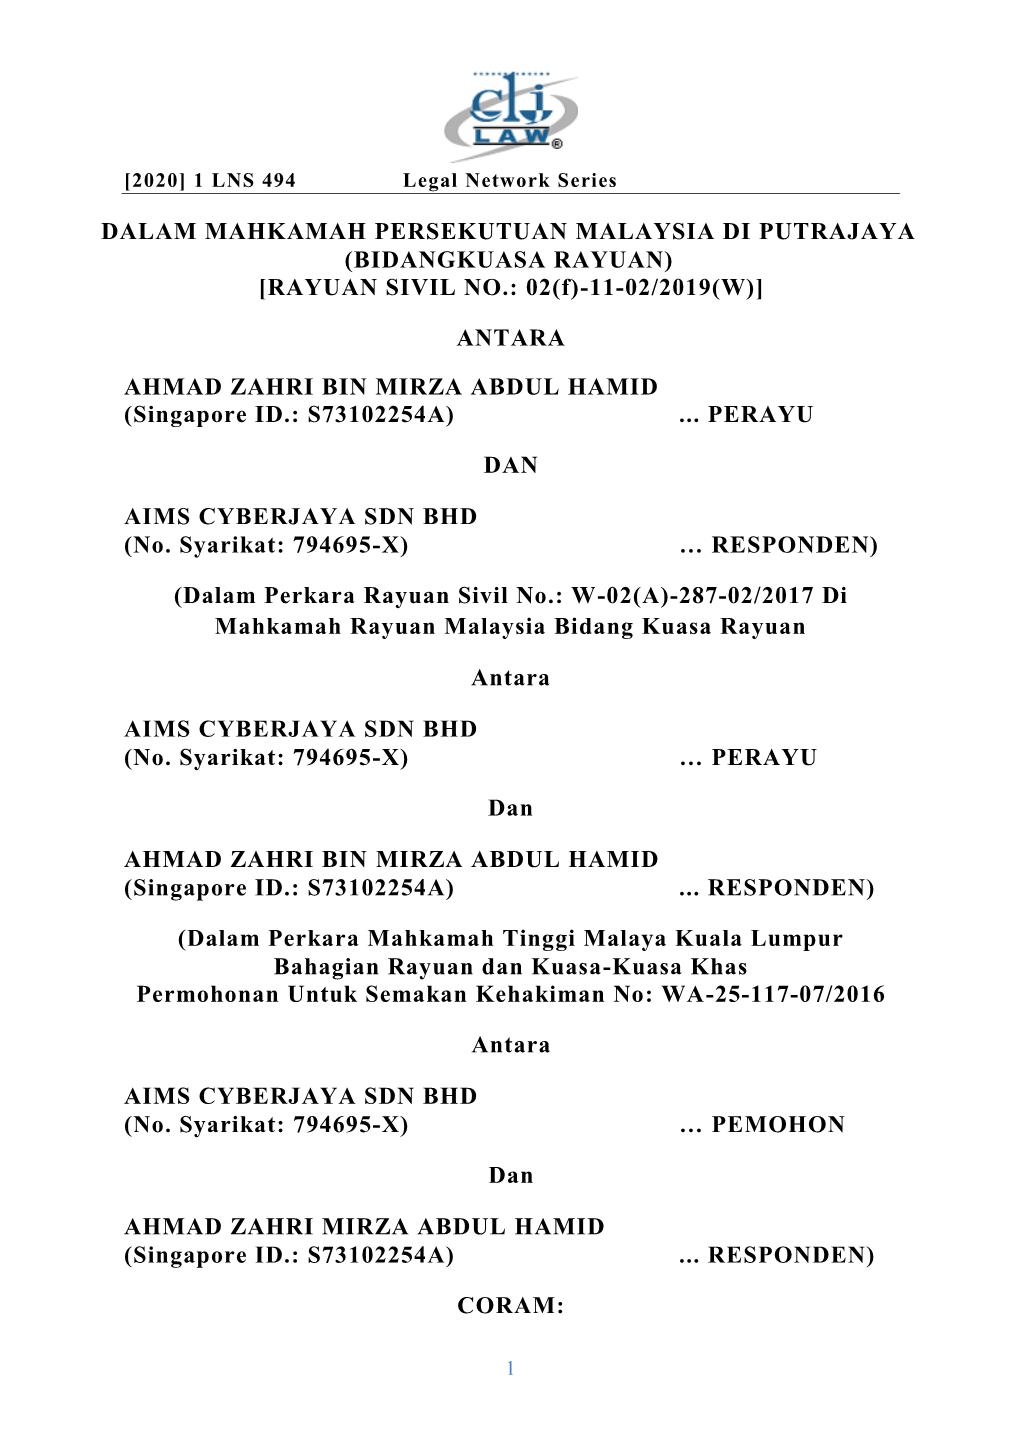 Ahmad Zahri Bin Mirza Abdul Hamid V AIMS